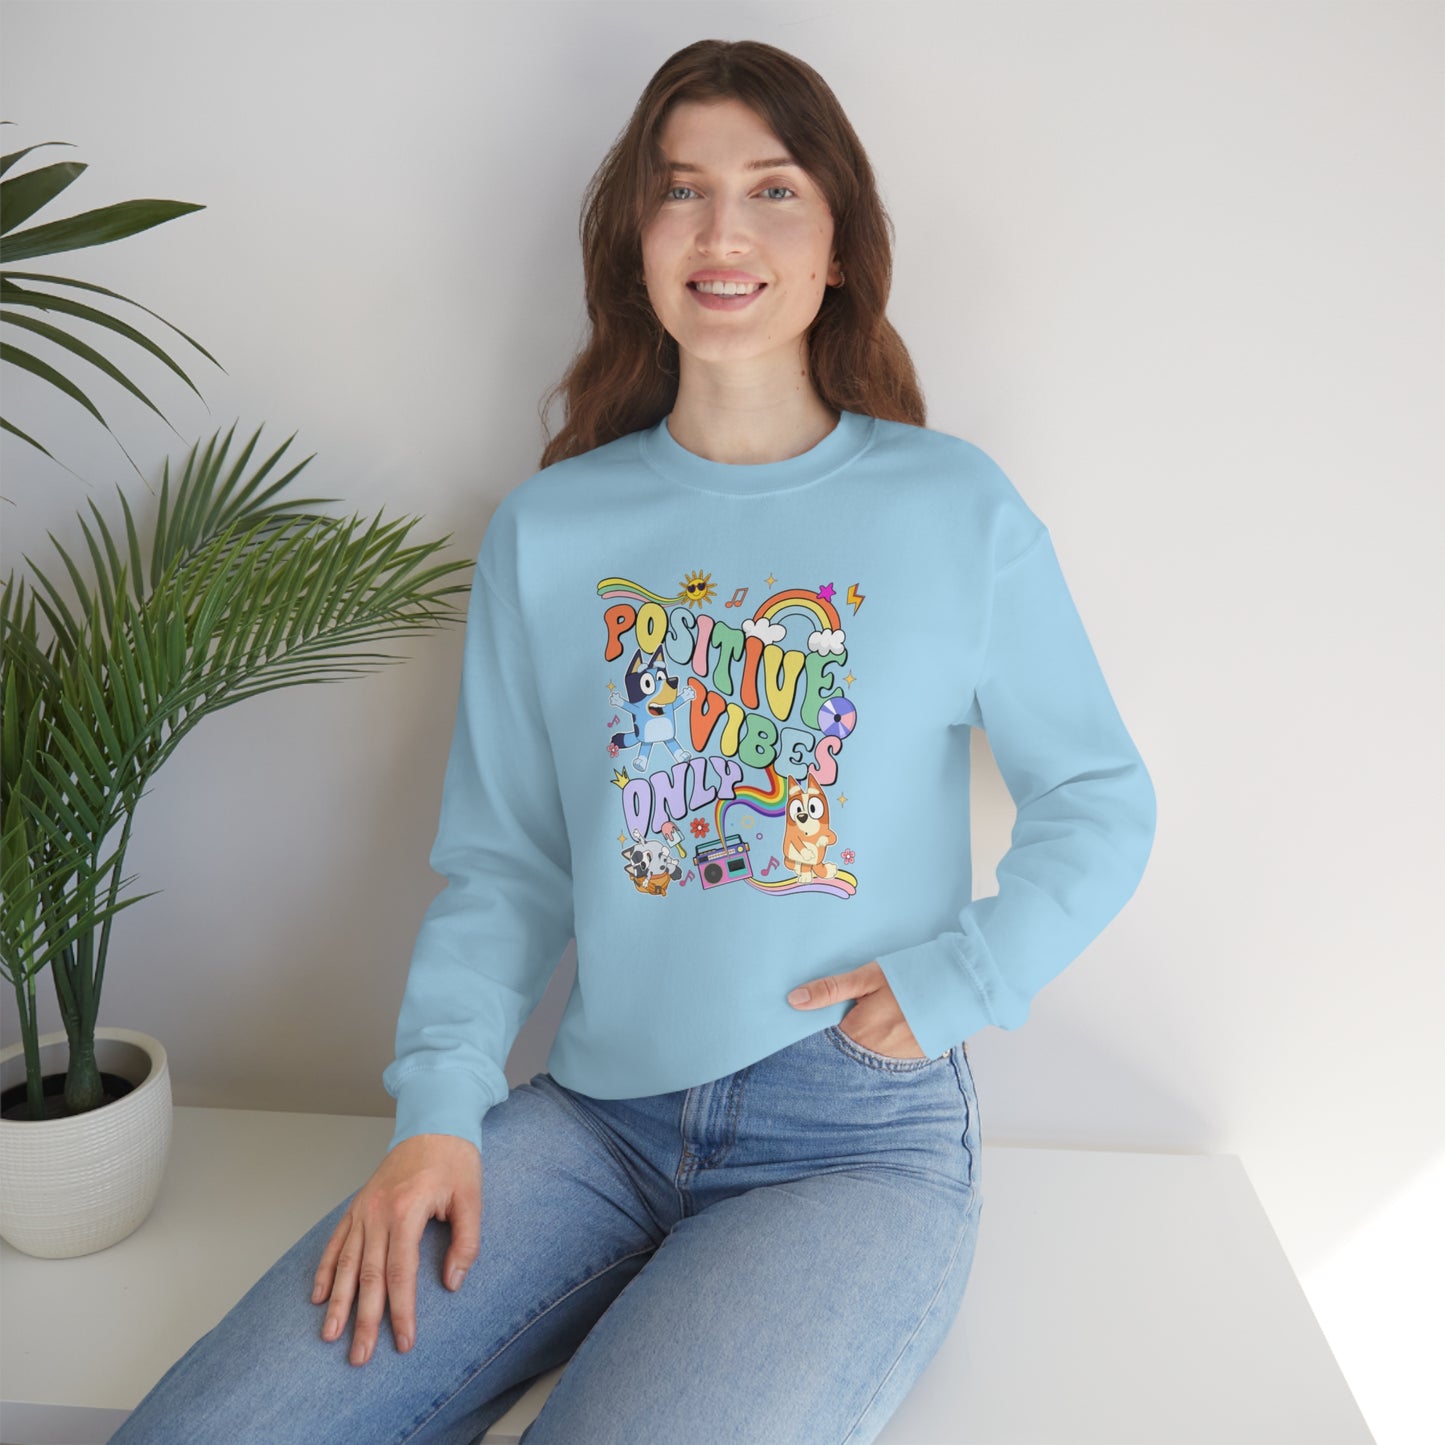 Bluey Positive Vibes Sweatshirt